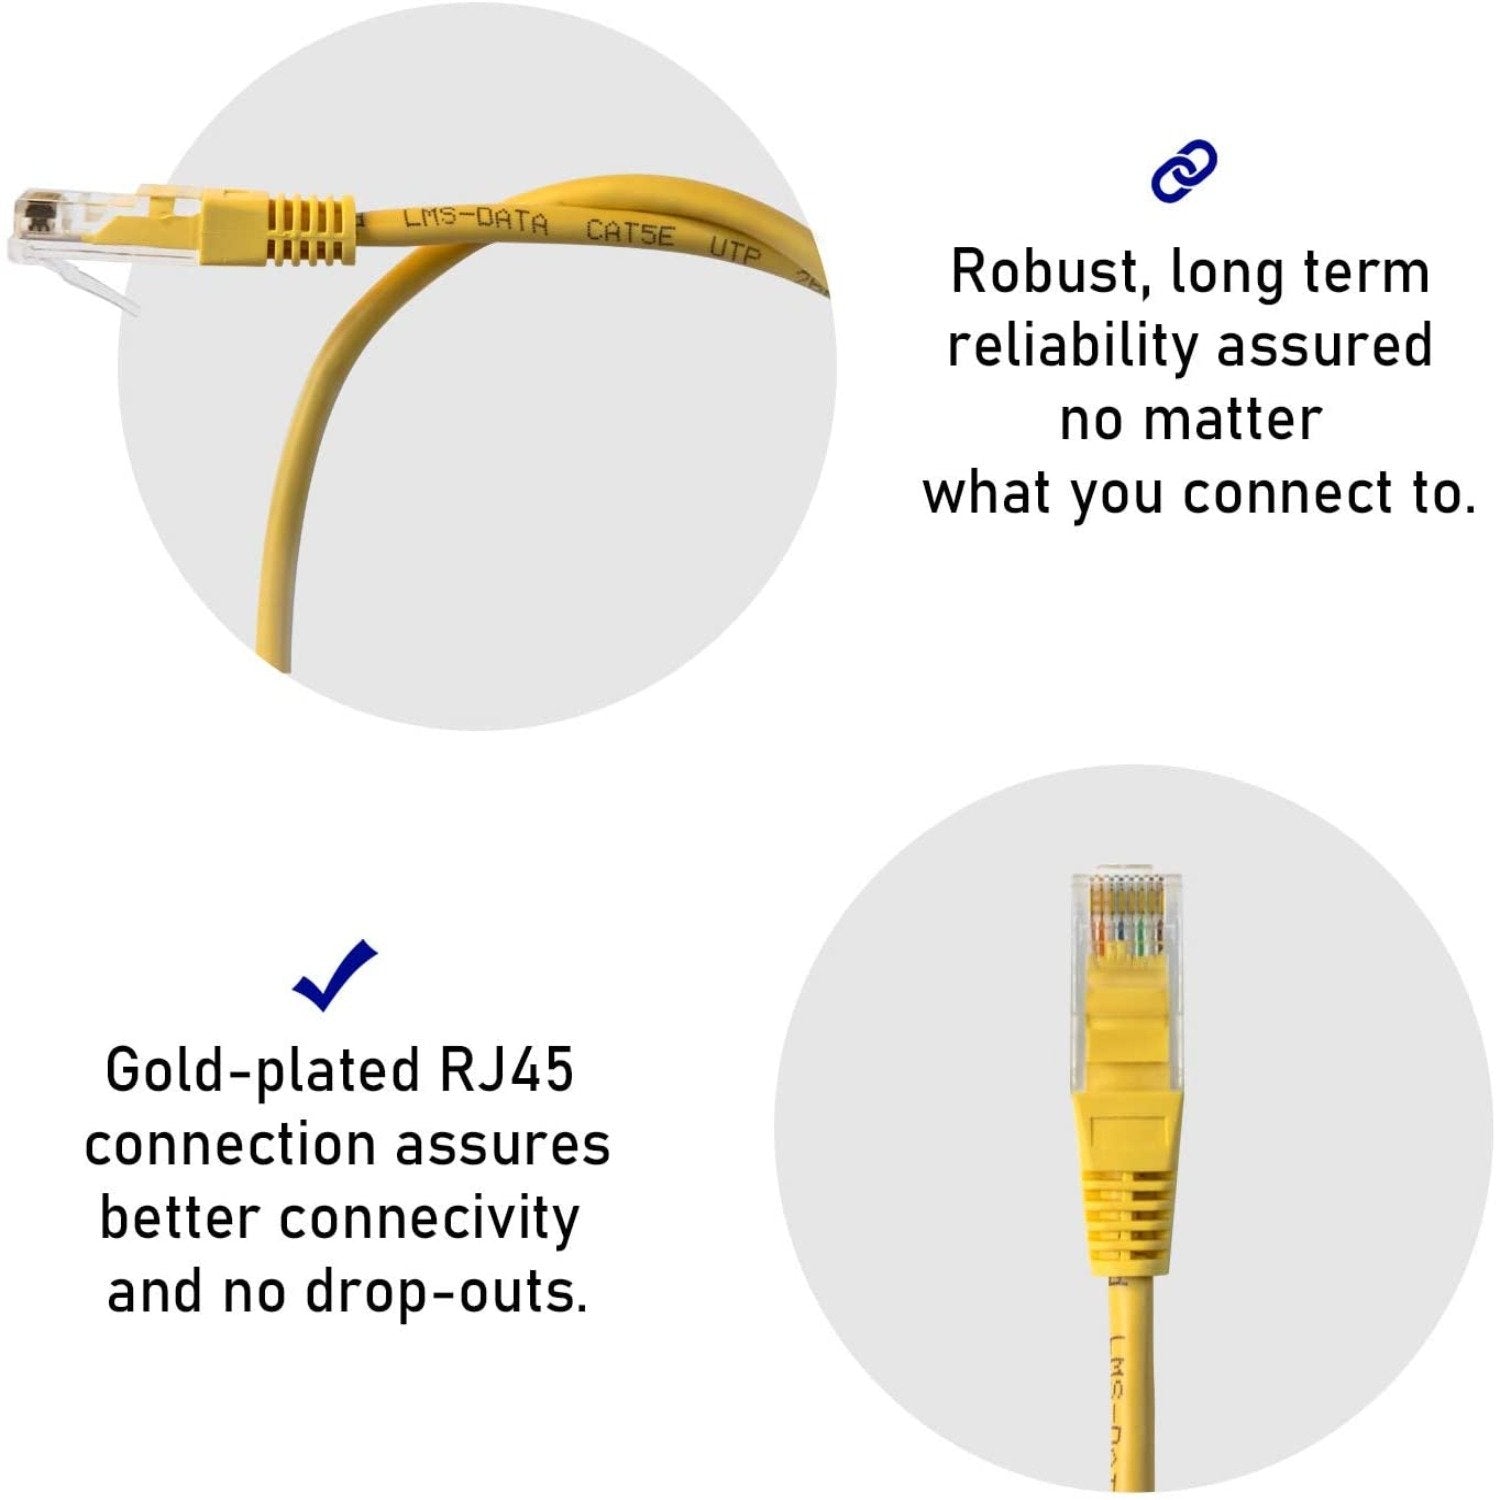 2.0m LMS Data Ethernet Cat6 RJ45 UTP Patch cable cord, LAN 10/100/1000Mbit/s Cable suitable